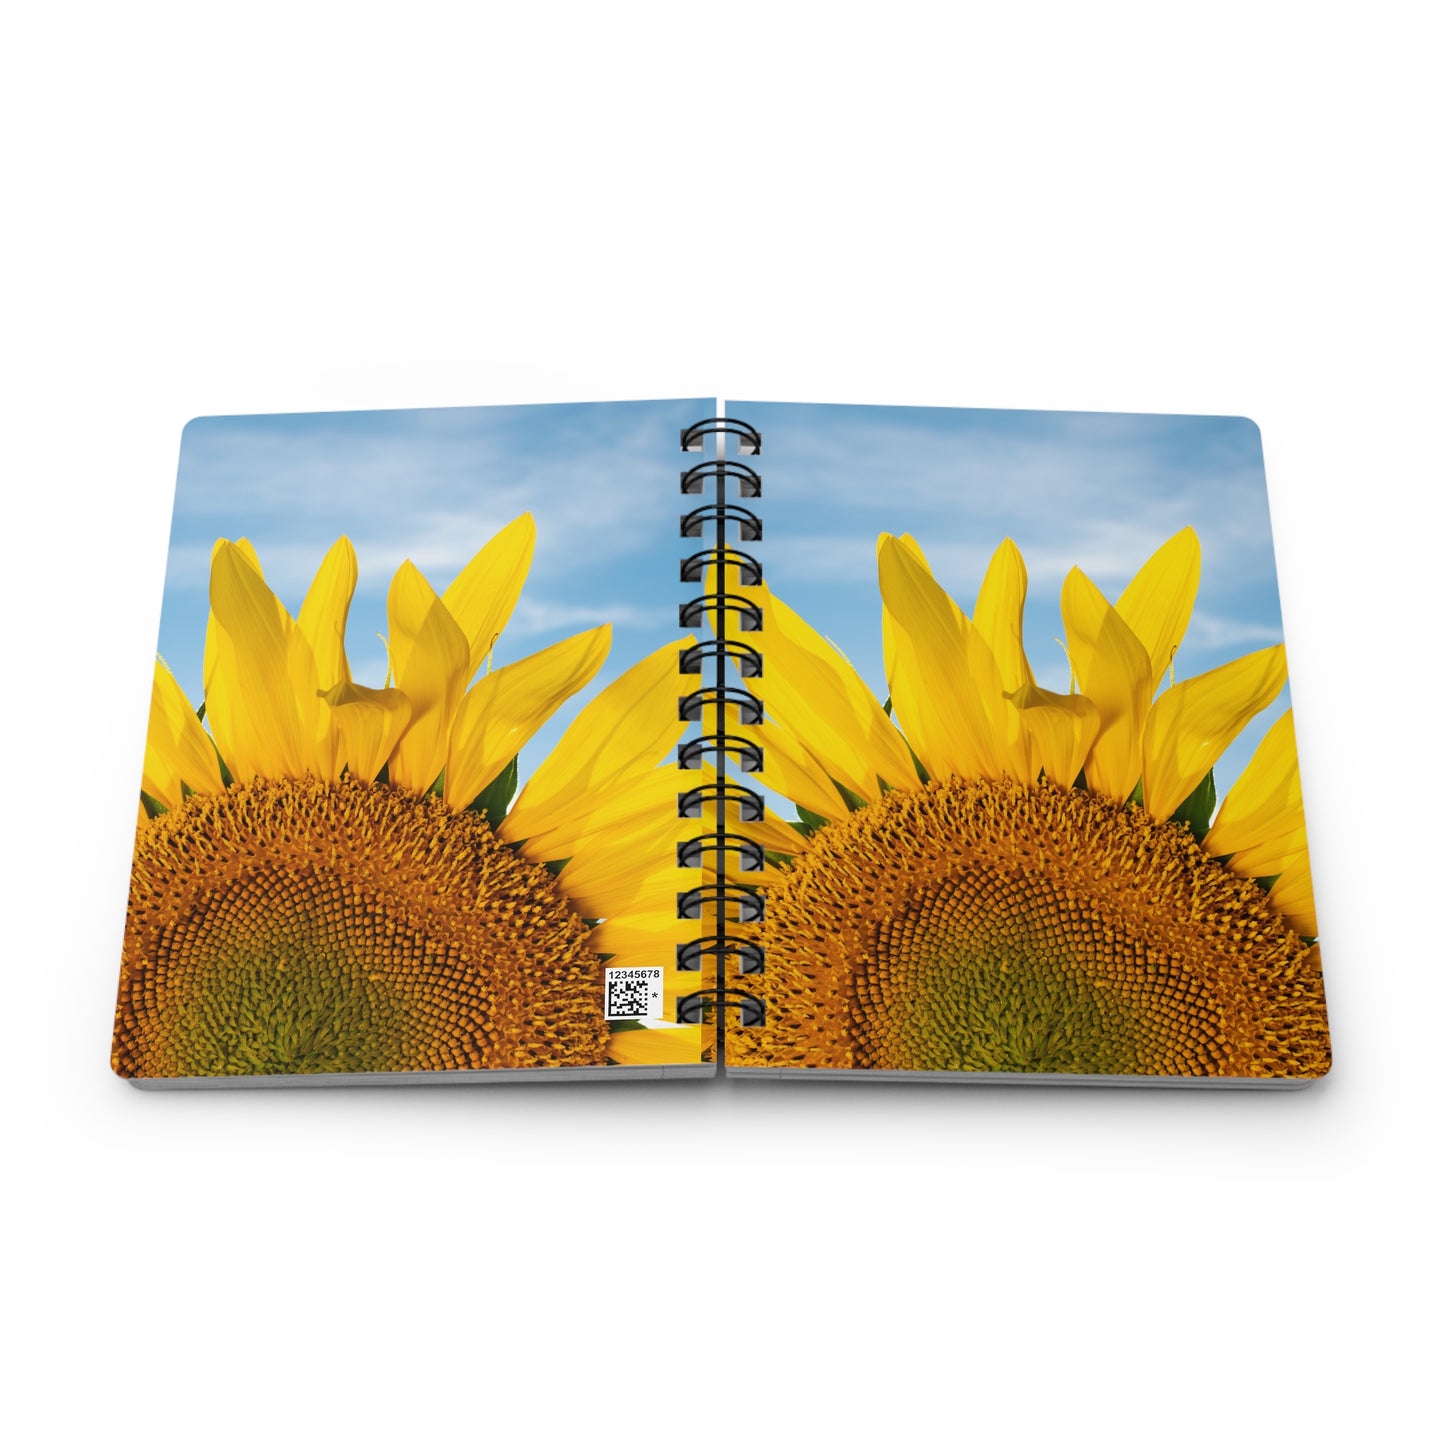 Sunflowers 05 - Spiral Bound Journal One Size